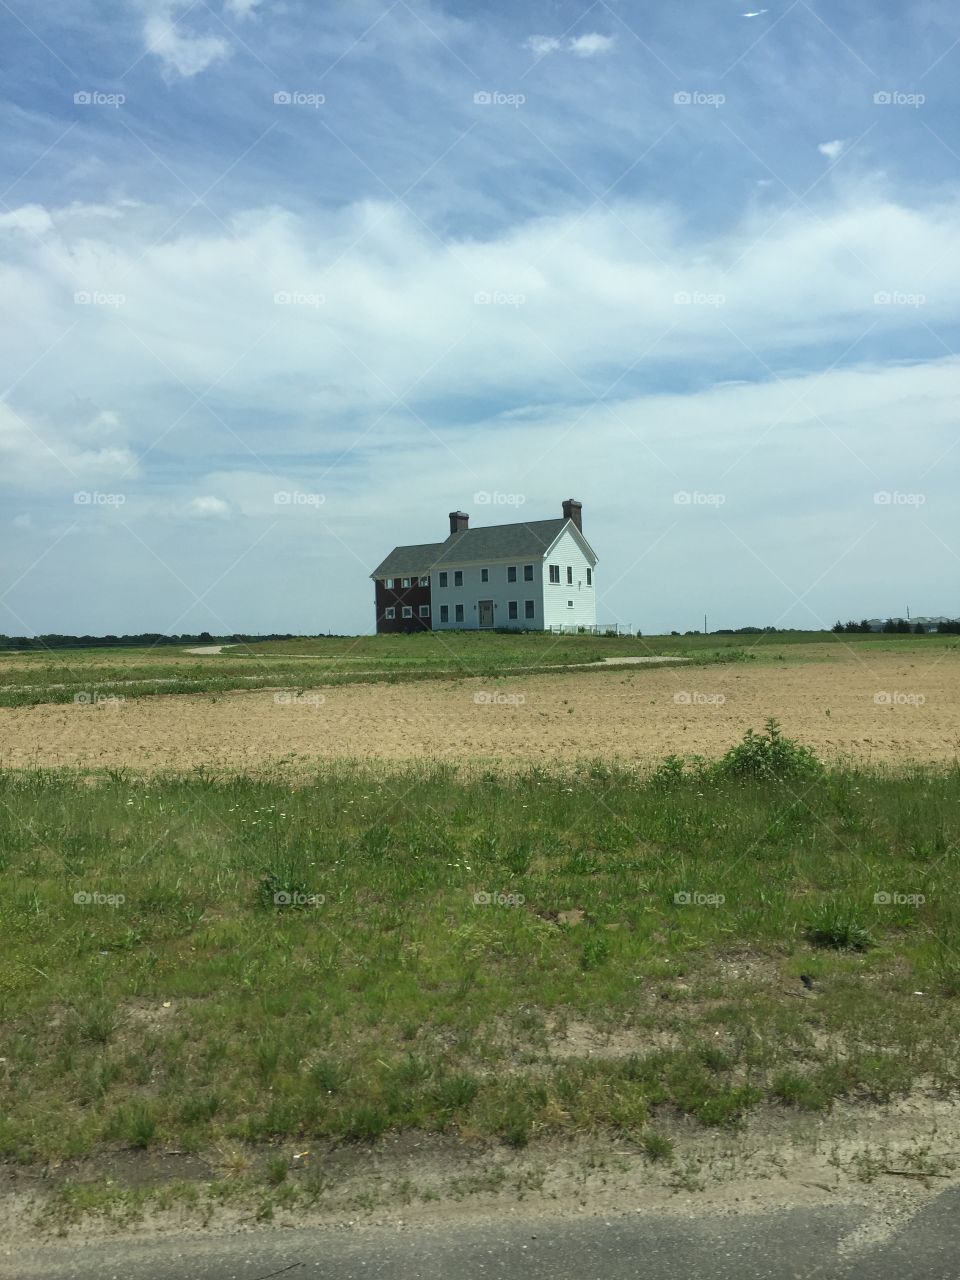 Farm house in Long Island, NY